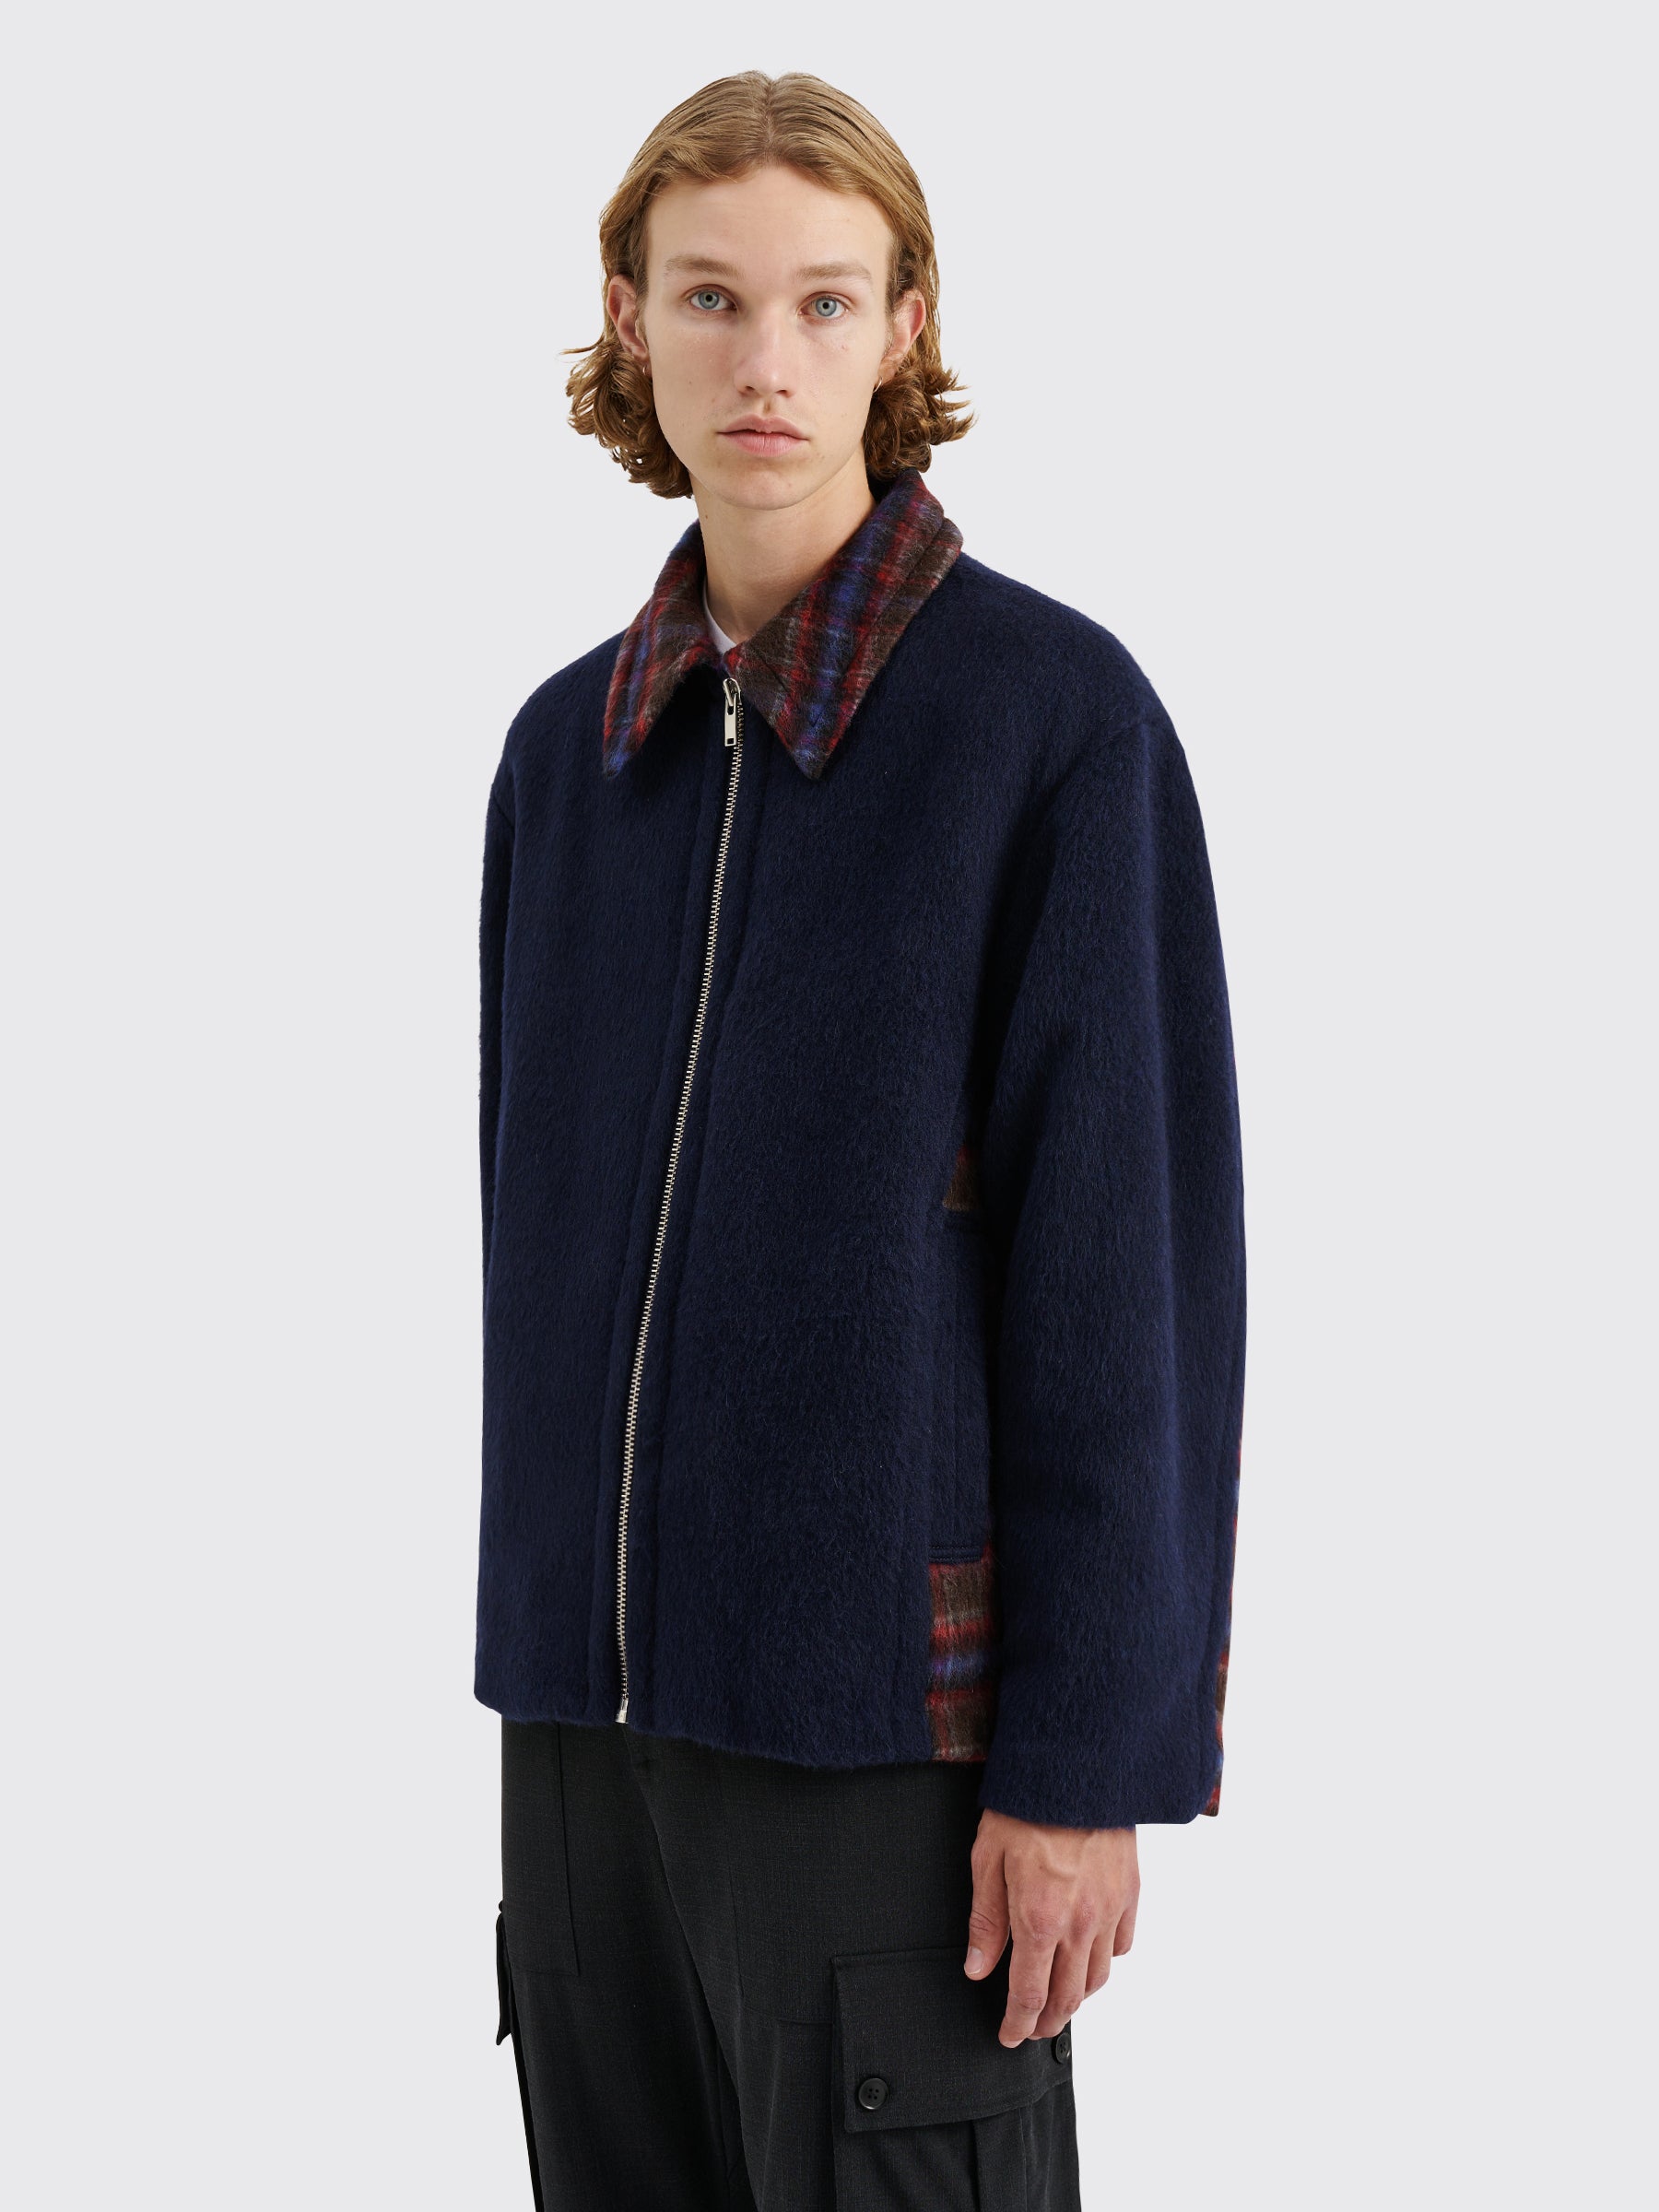 TRÈS BIEN everywear Oversized Zip Jacket Hairy Wool Navy / Check